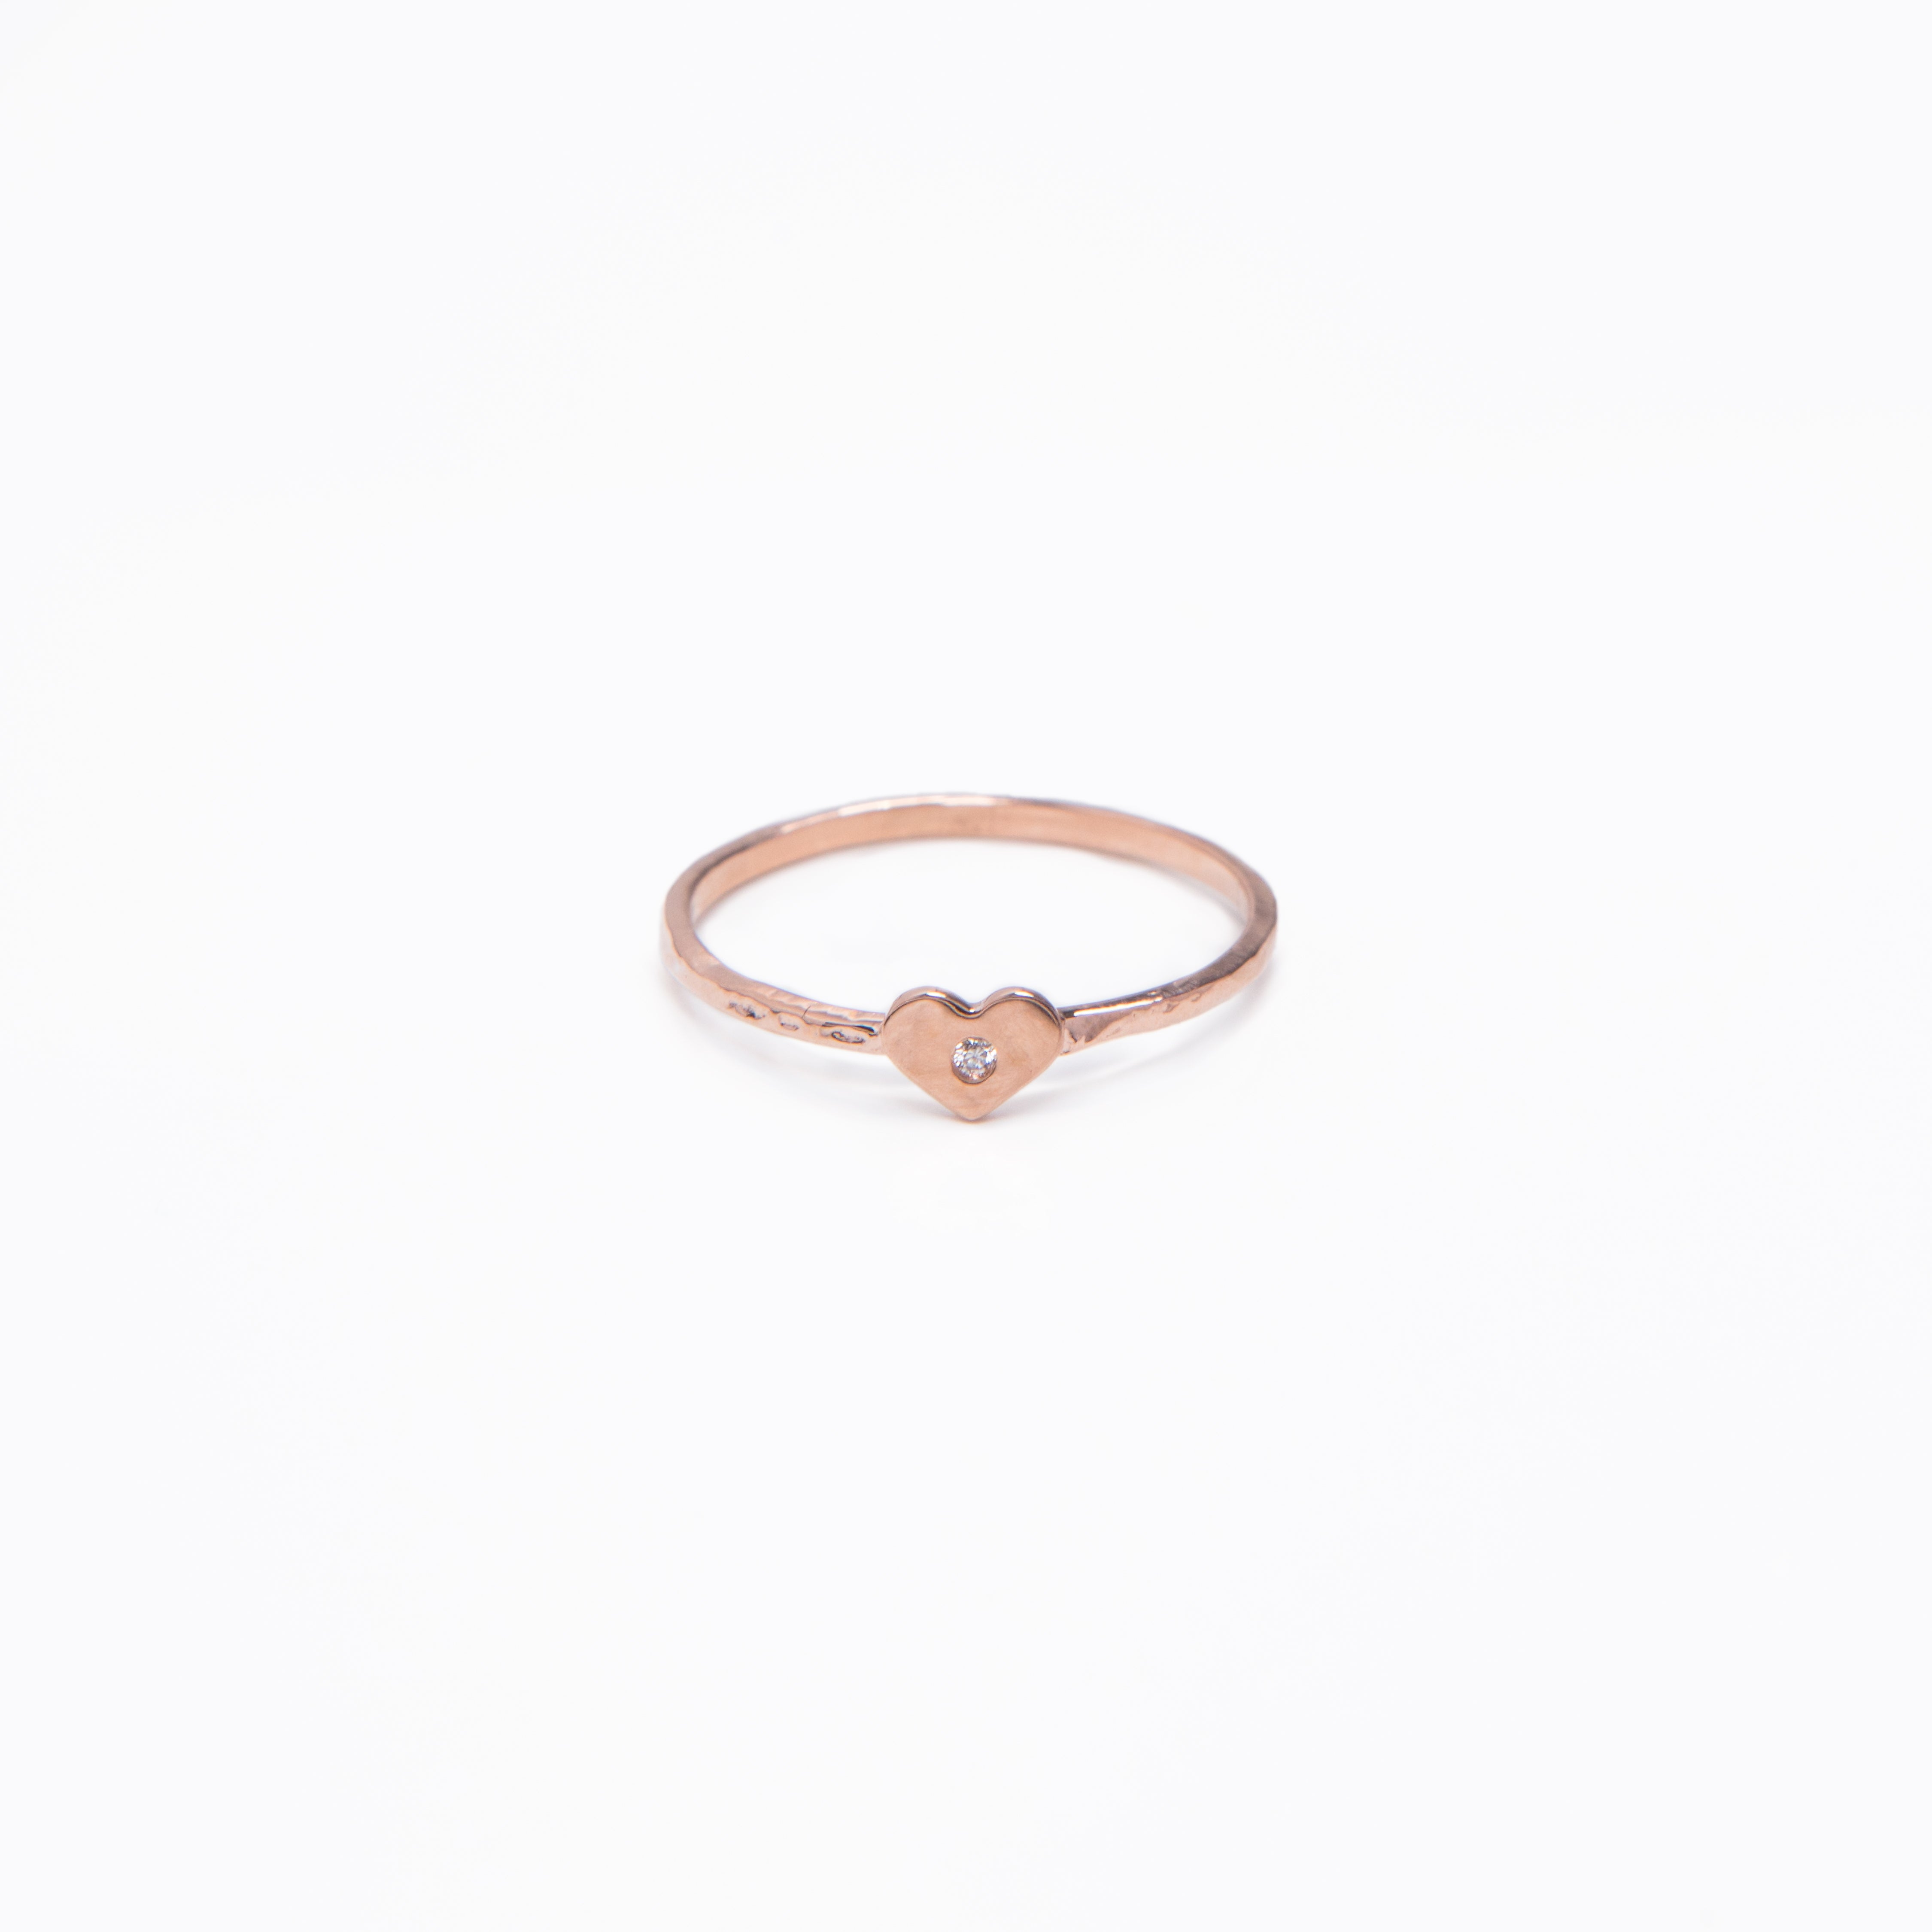 WD24 - Tiny Heart Ring